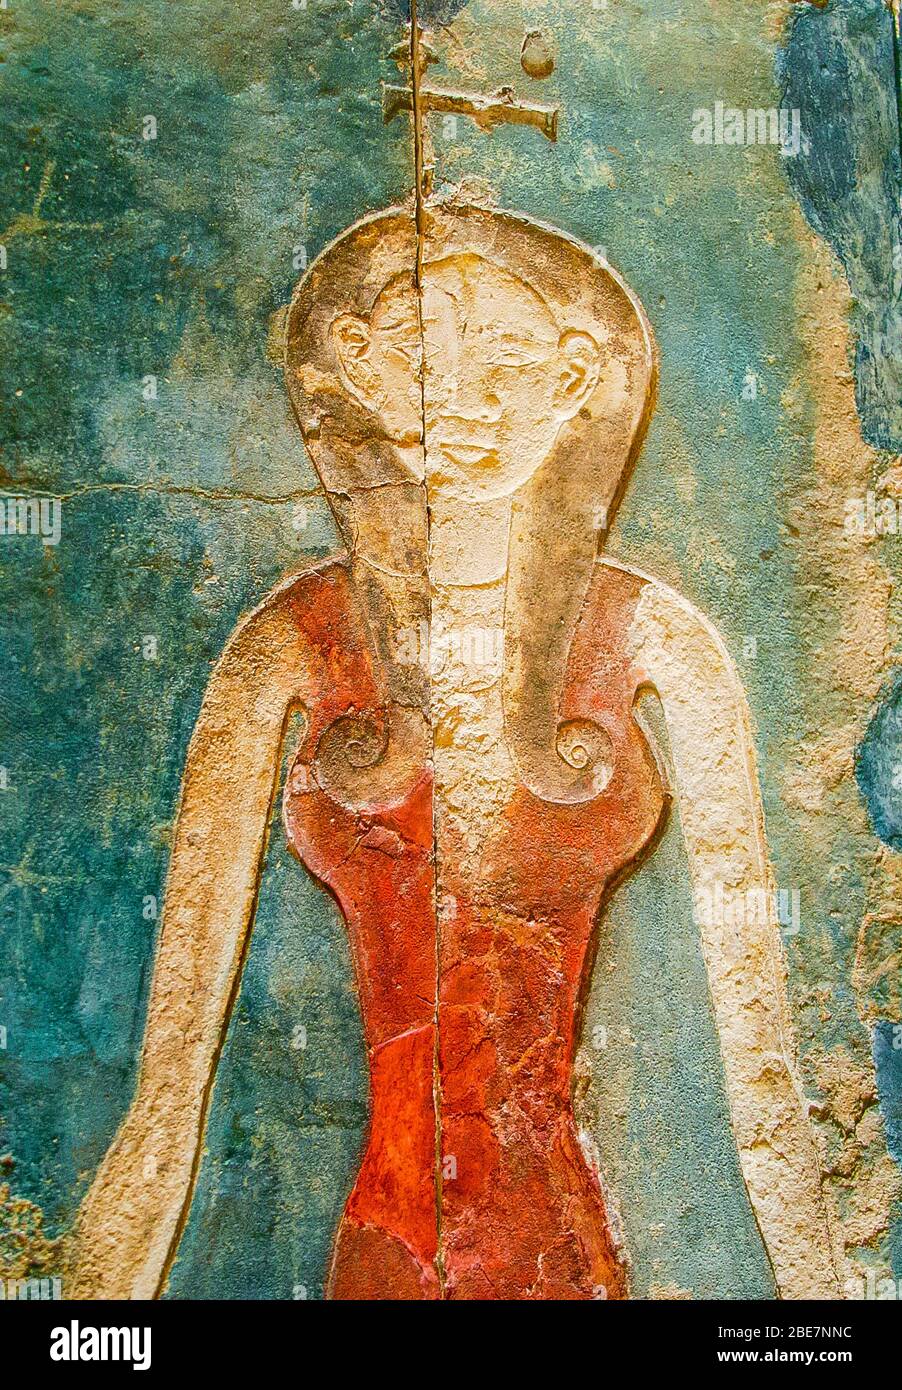 Ägypten, Kairo, Heliopolis, zukünftiges Freilichtmuseum. Grab von Panehesy, 26. Dynastie. Die Nuss-Göttin an der Decke. Stockfoto